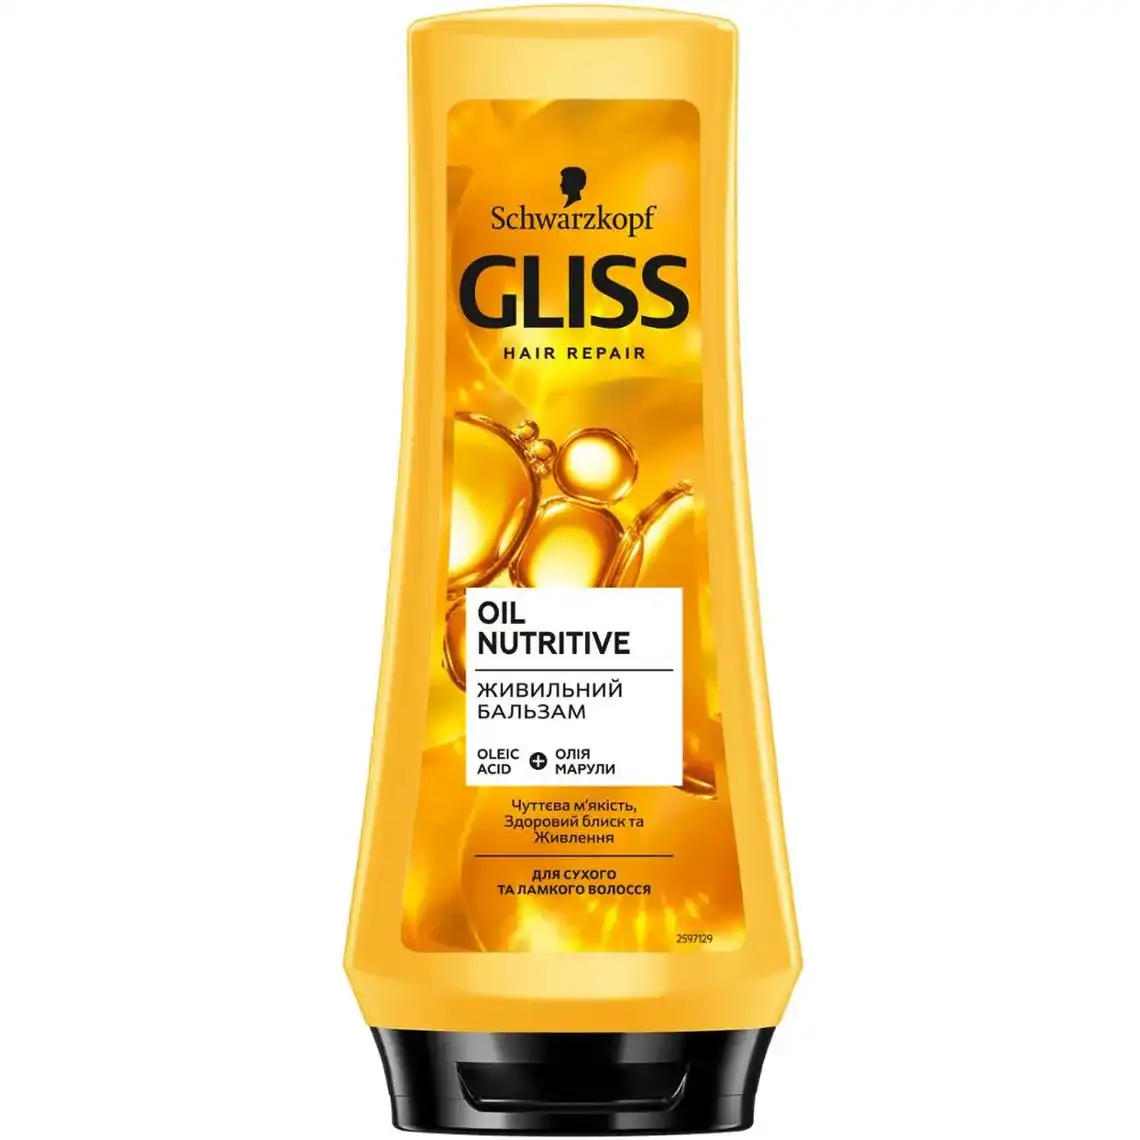 Бальзам Gliss Kur Oil Nutritive для сухого та пошкодженого волосся 200 мл